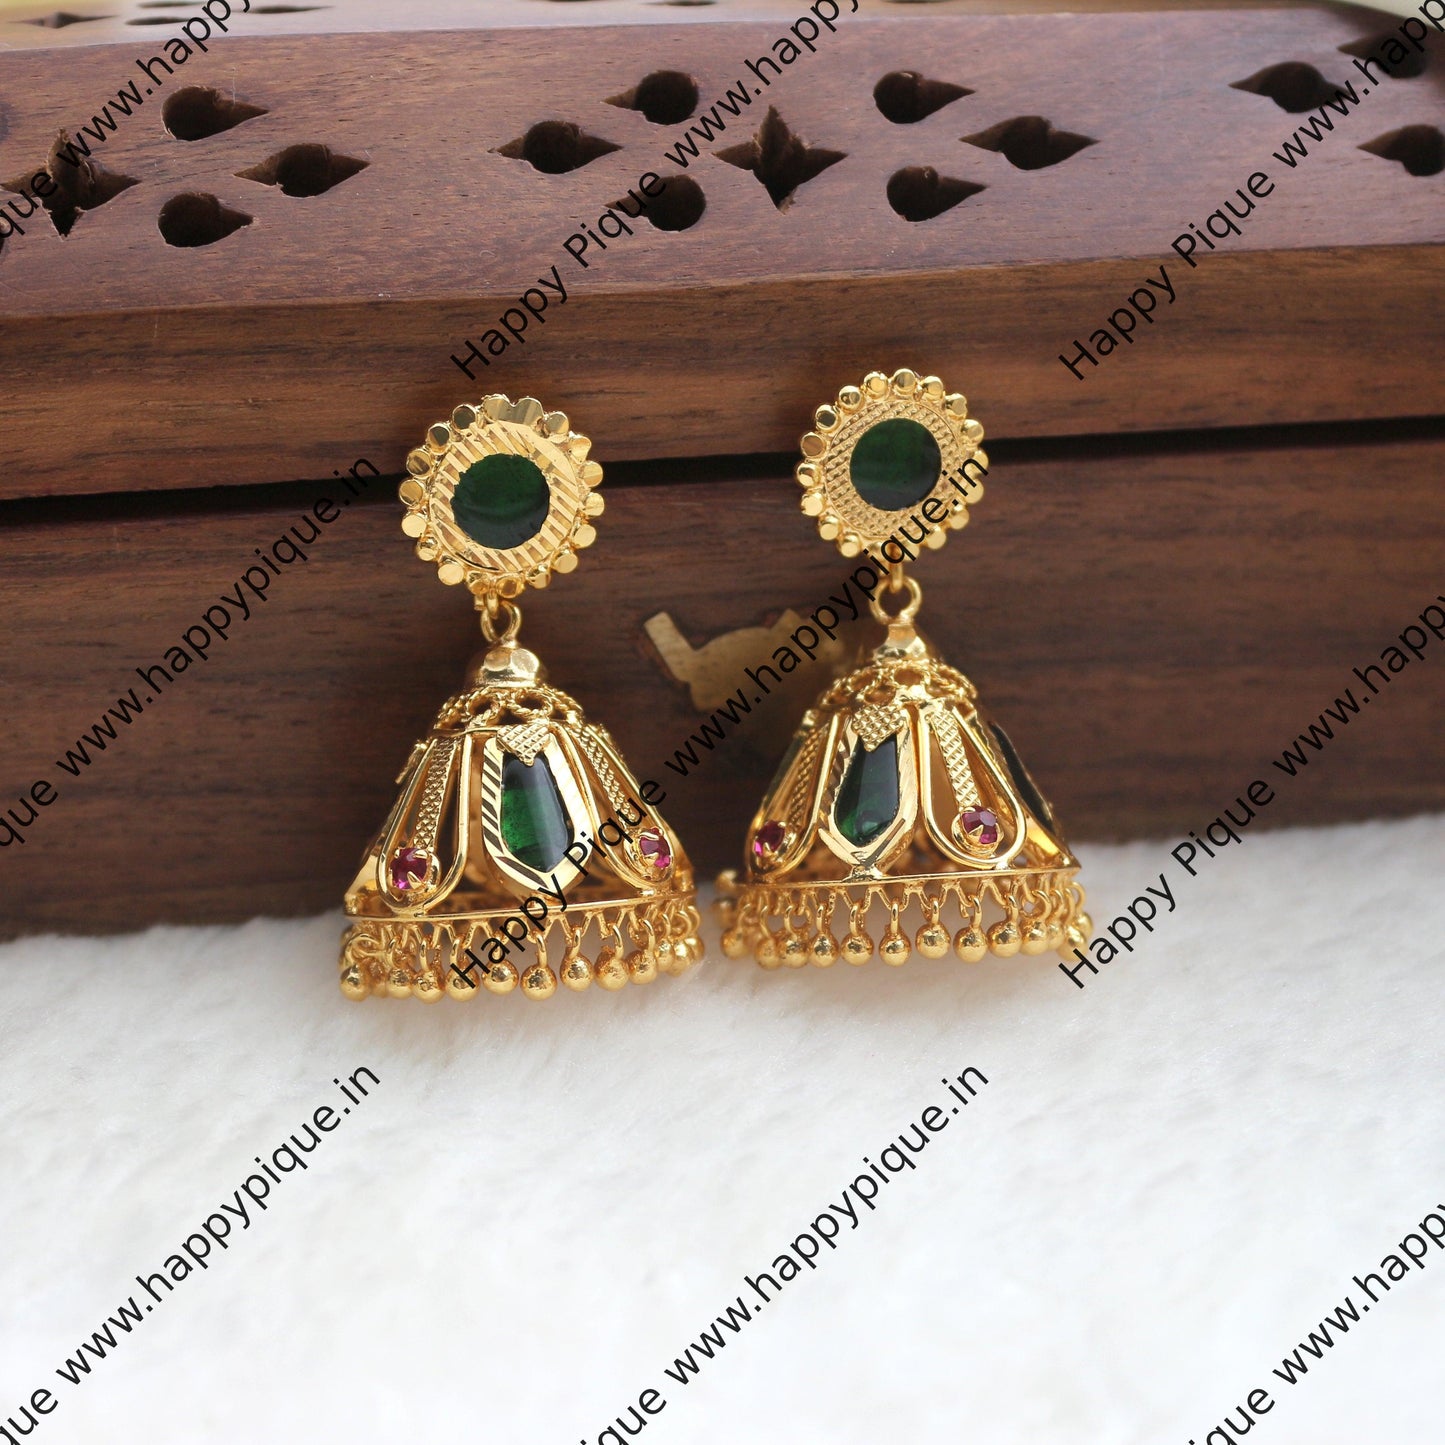 Real Gold Tone Kerala Nagapadam Jhumkas - Medium Size